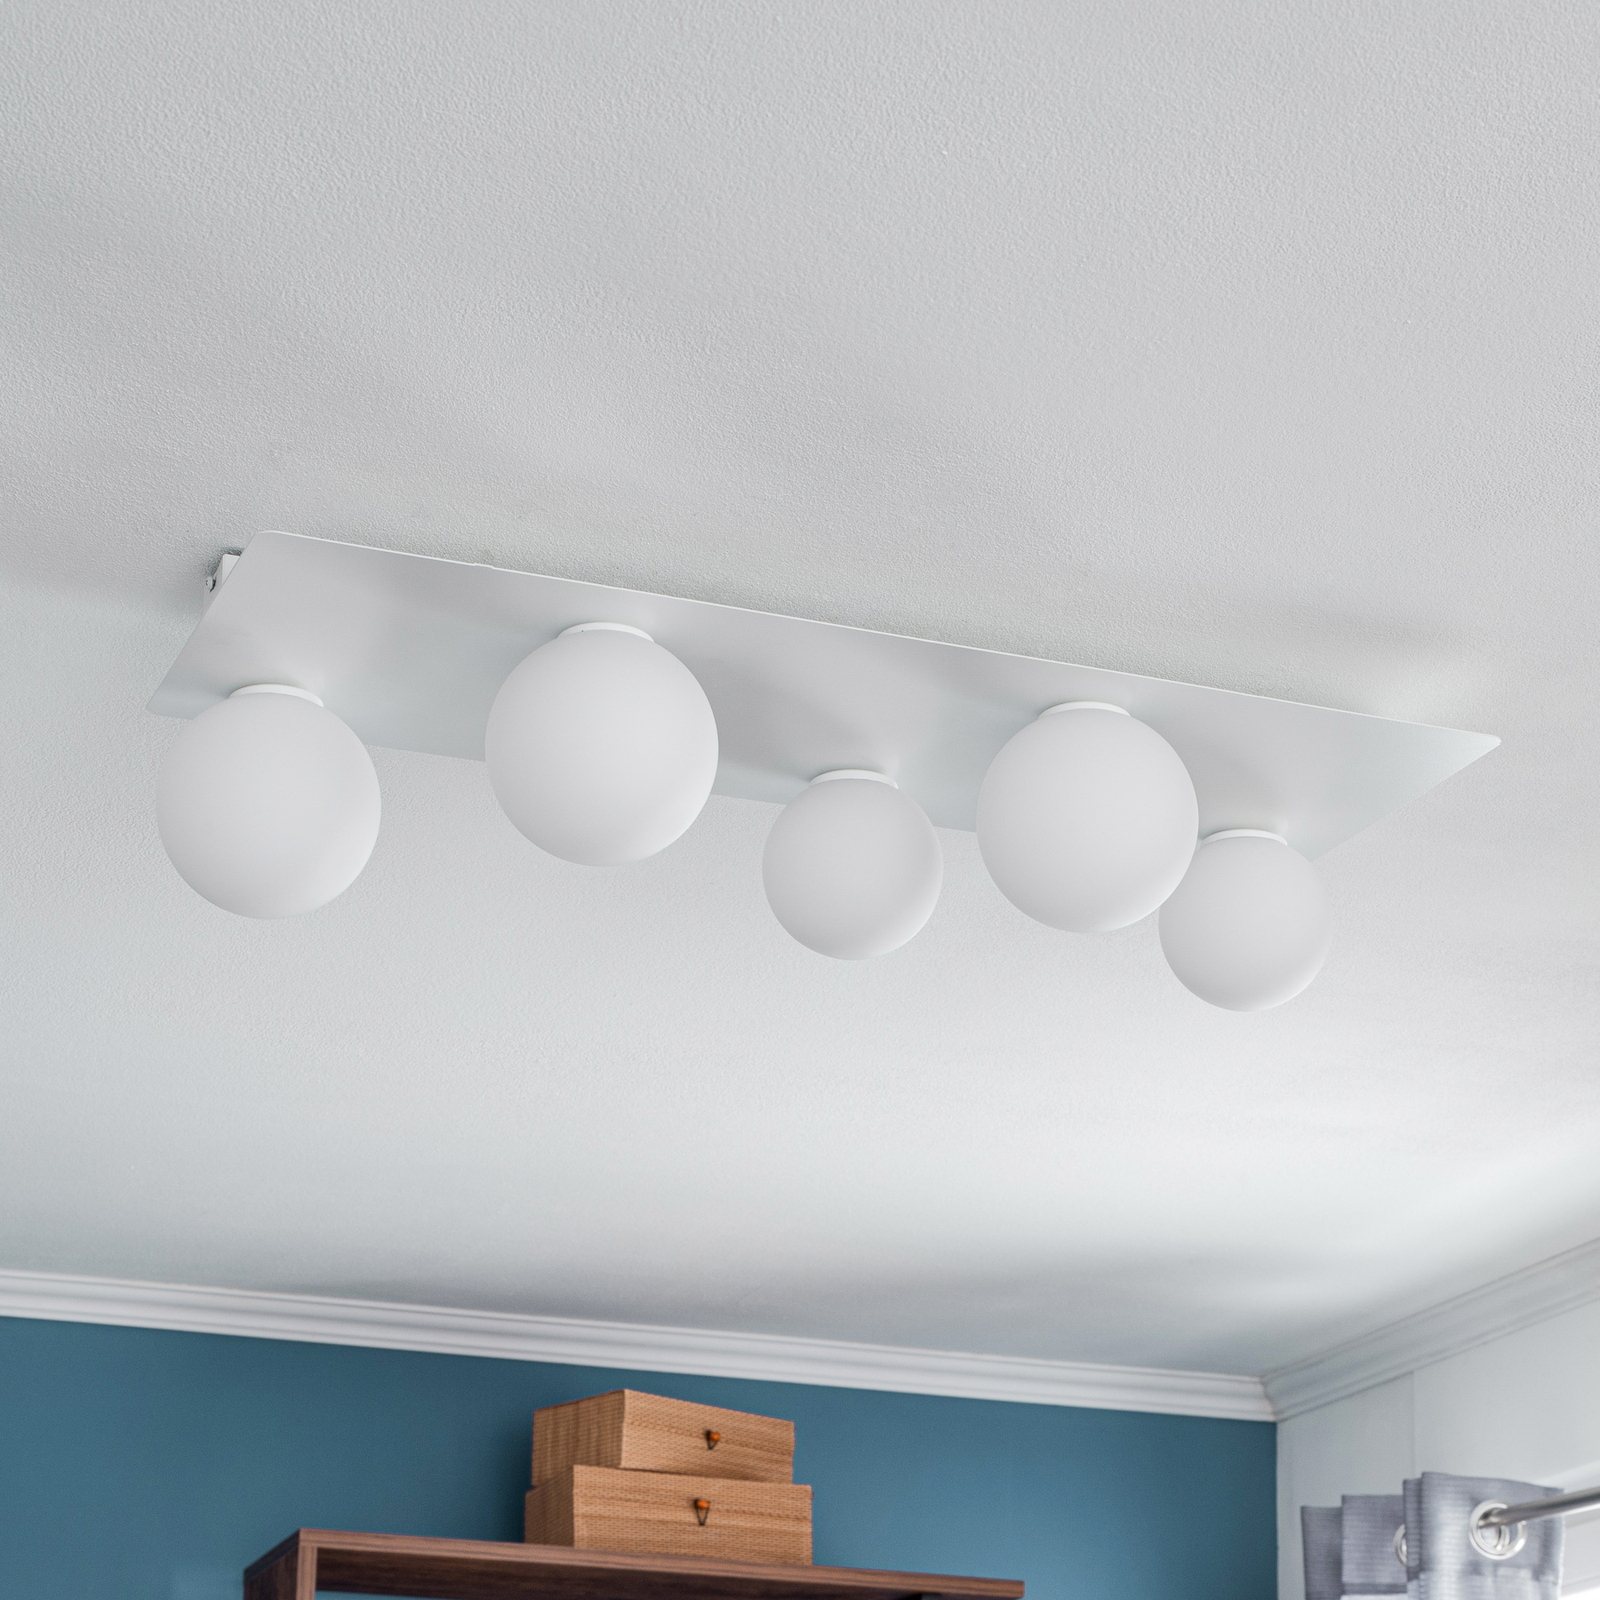 Firn ceiling light, angular, five-bulb, white